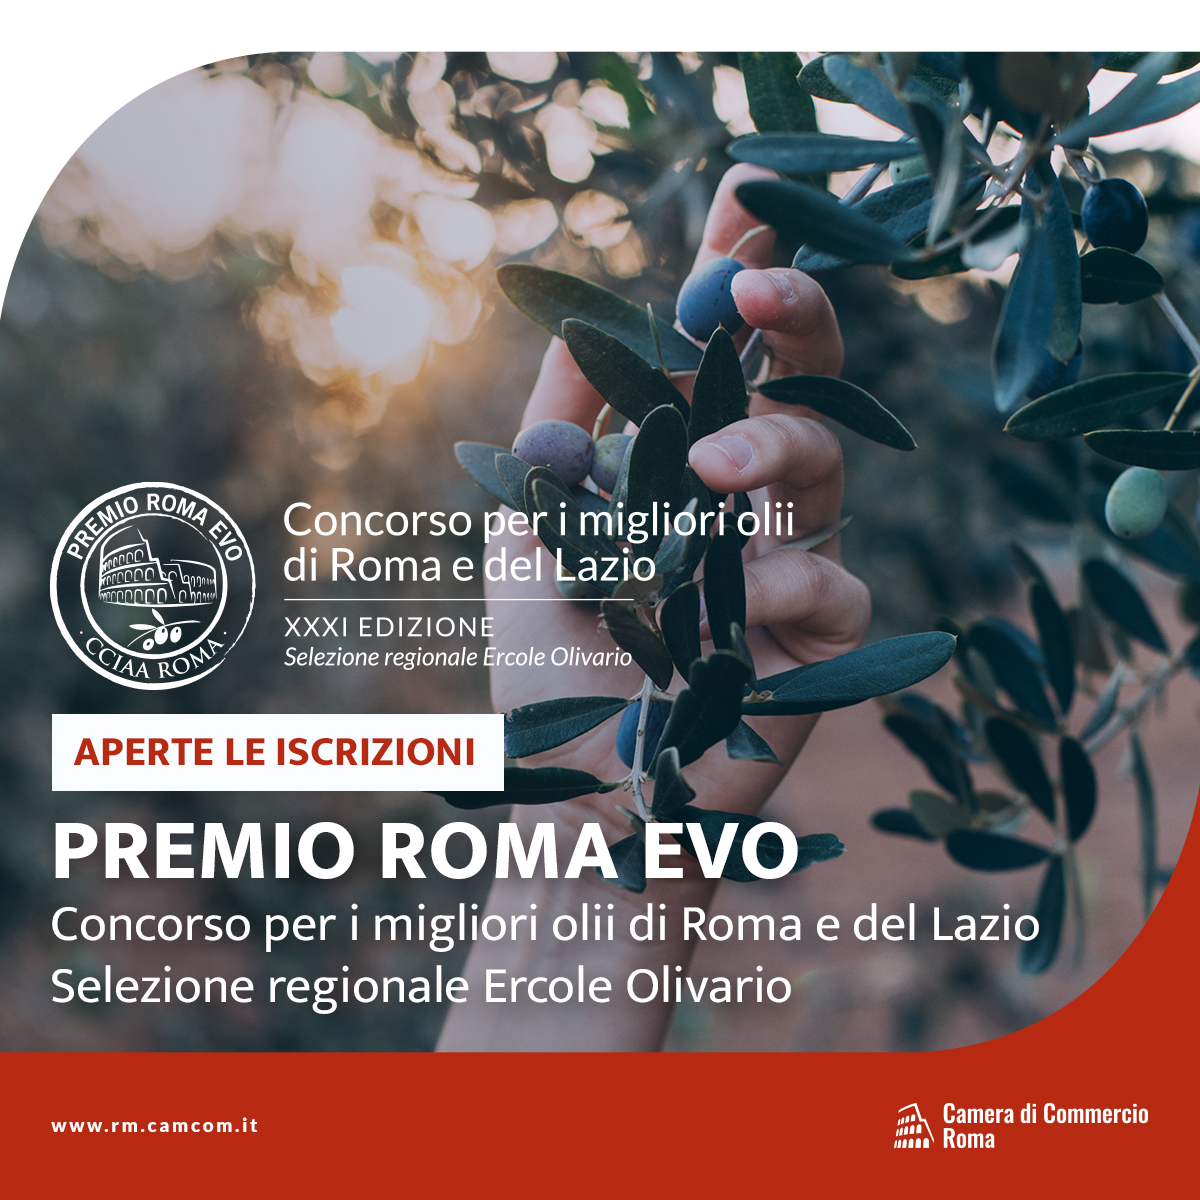 Premio Roma Evo - XXXI edizione: premiazione 23 marzo